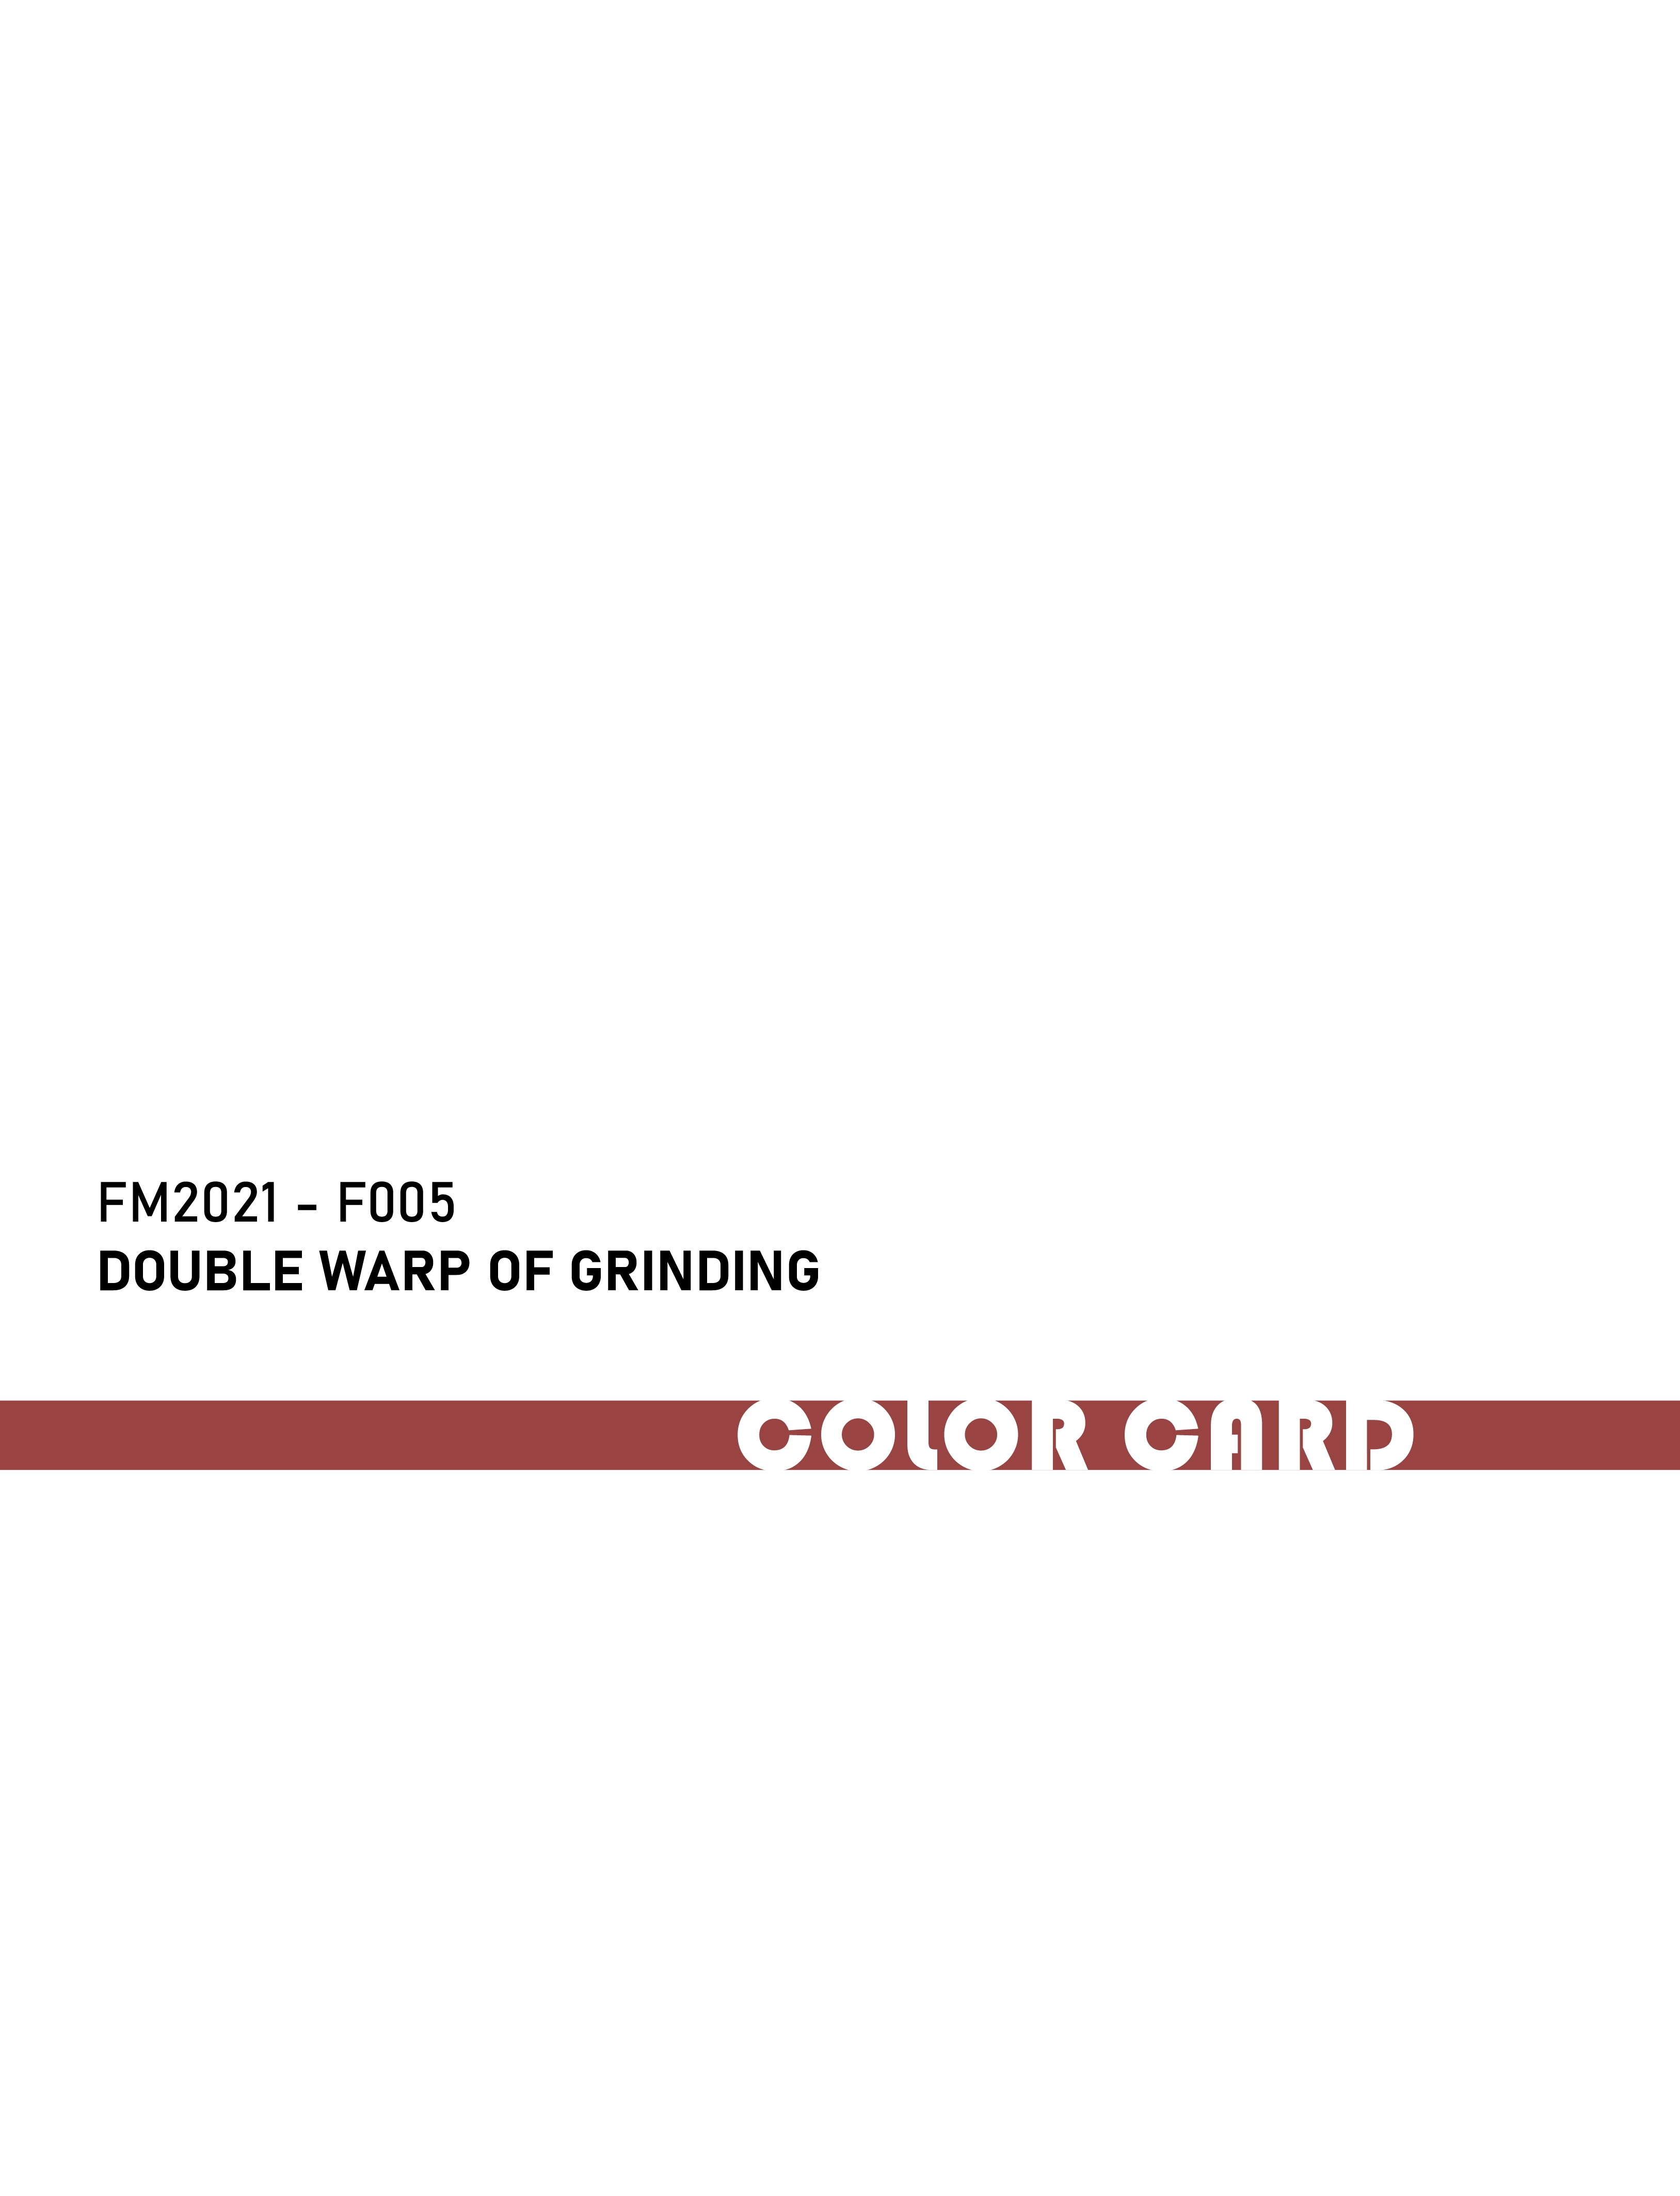 FM2021-F005 Двойная обертка шлифования